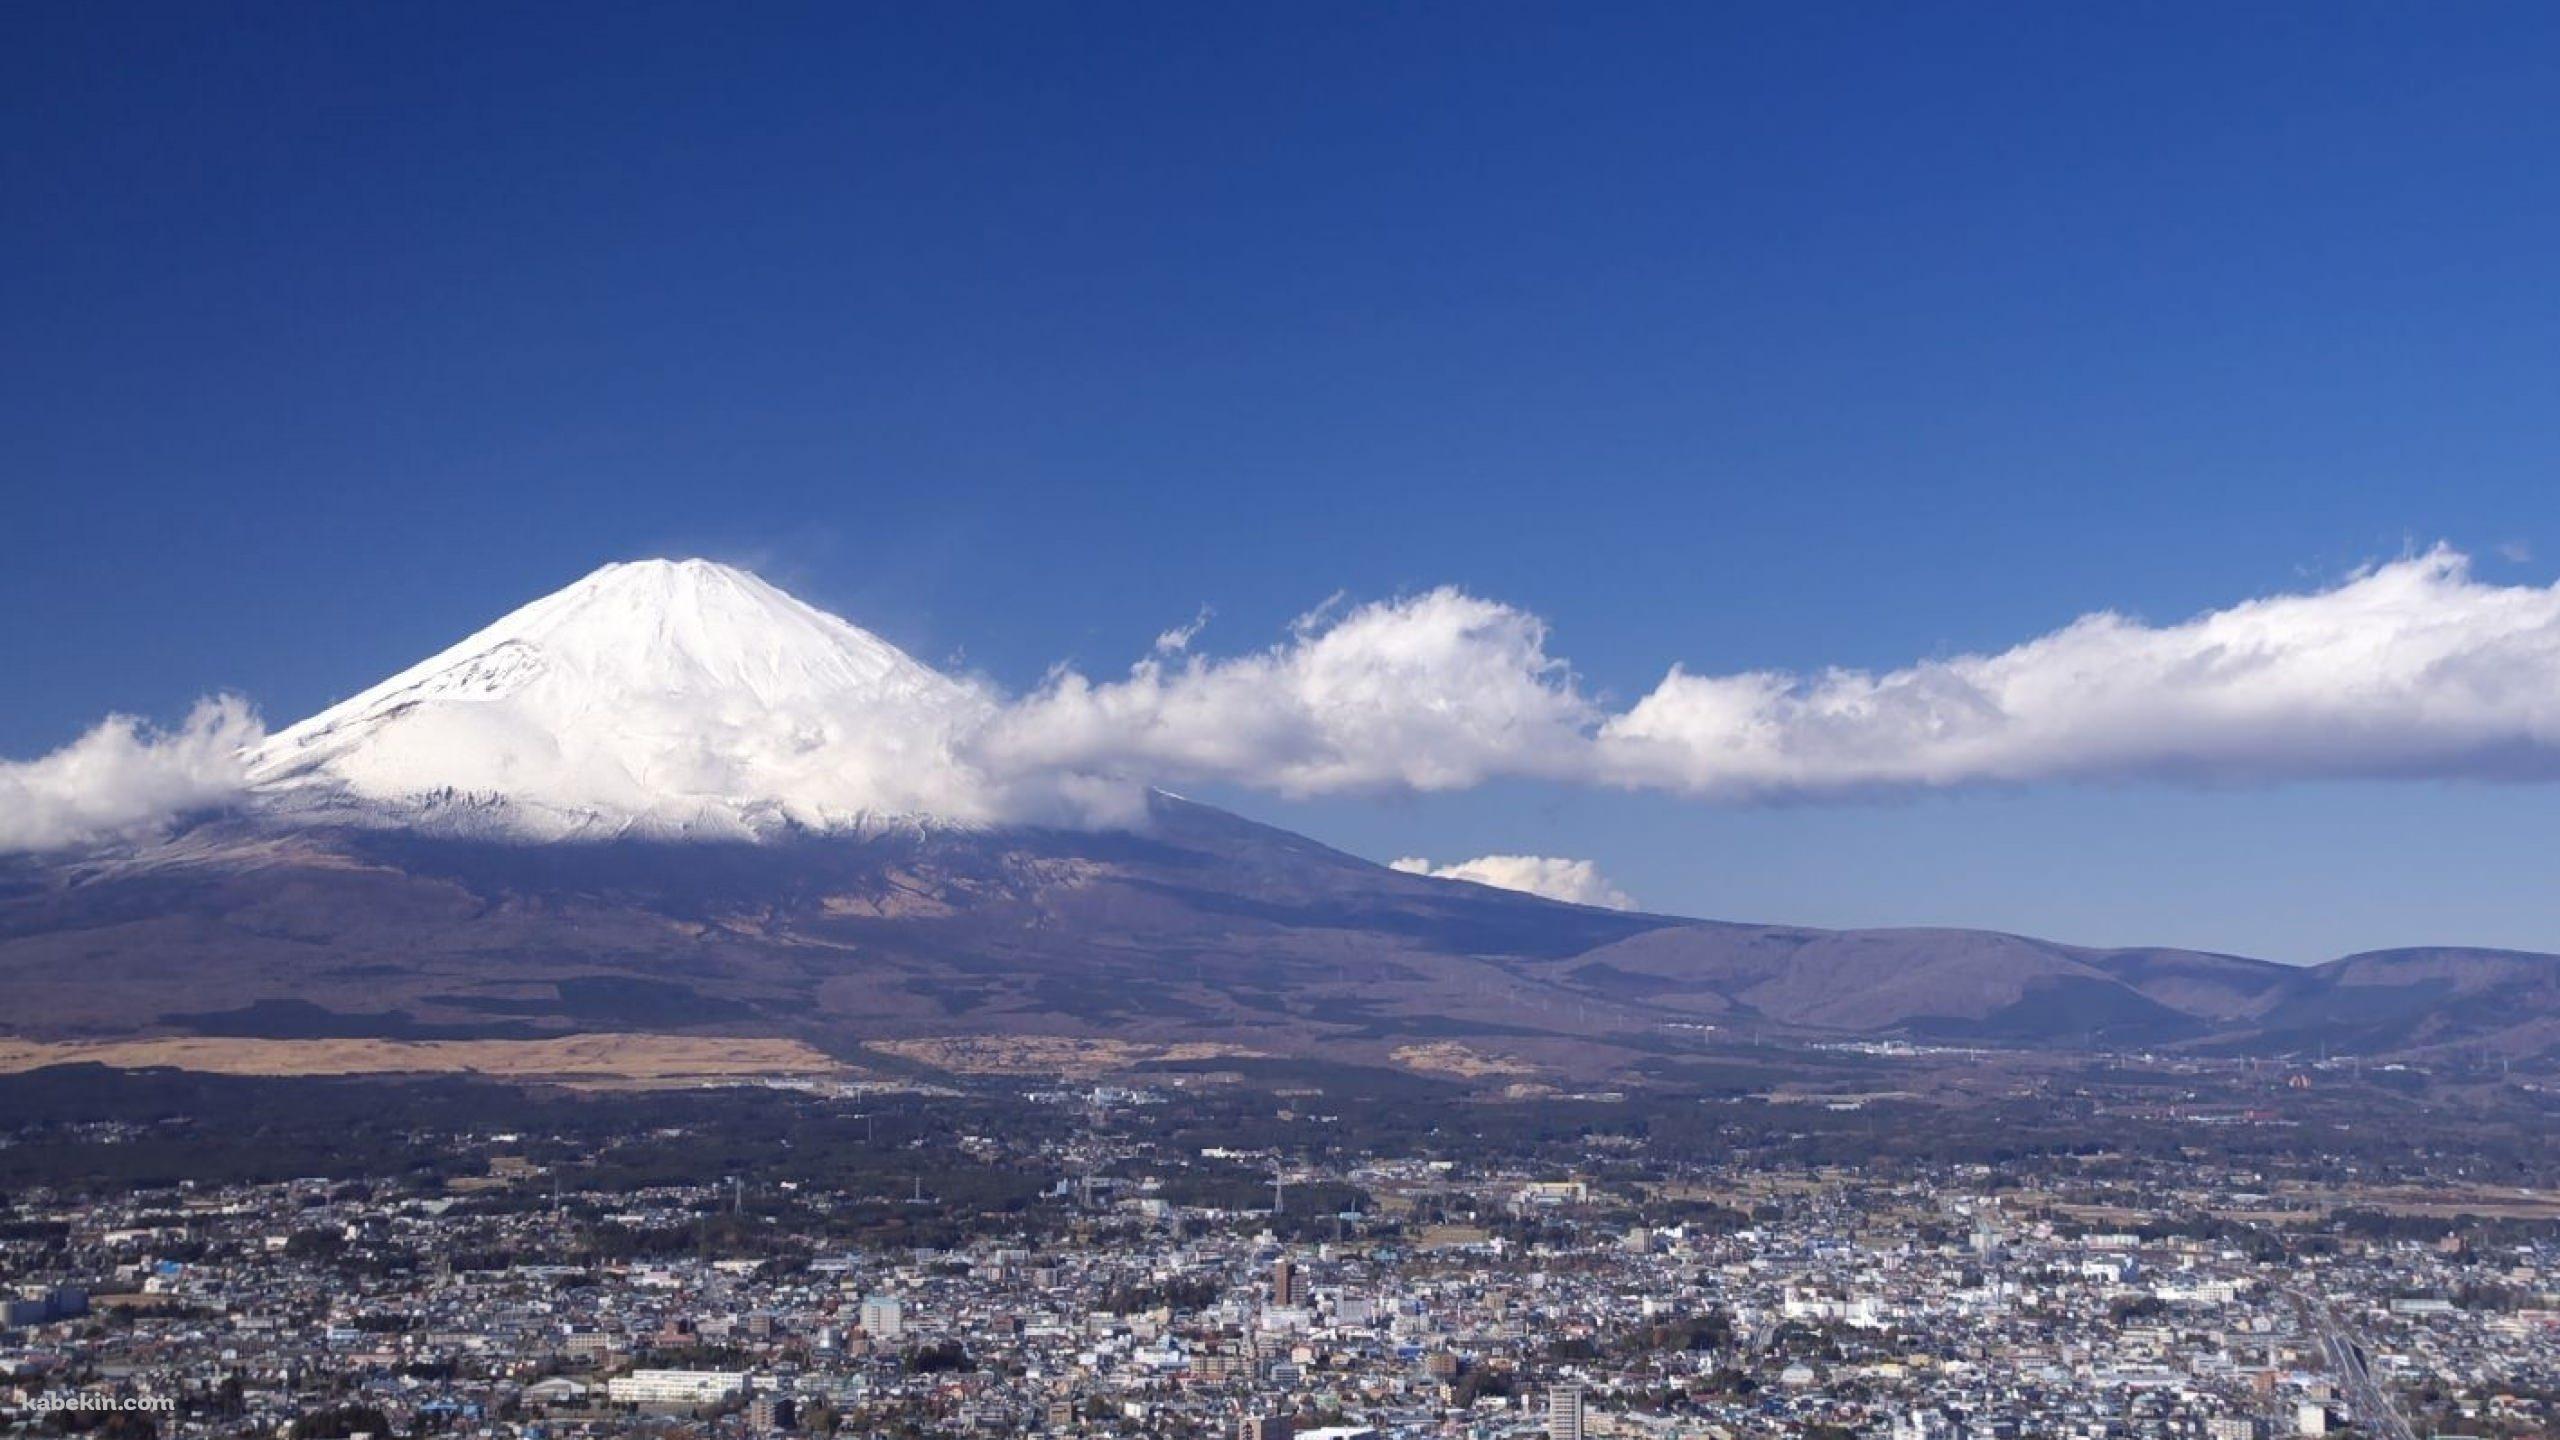 富士山 裾野に広がる街並みの壁紙(2560px x 1440px) 高画質 PC・デスクトップ用